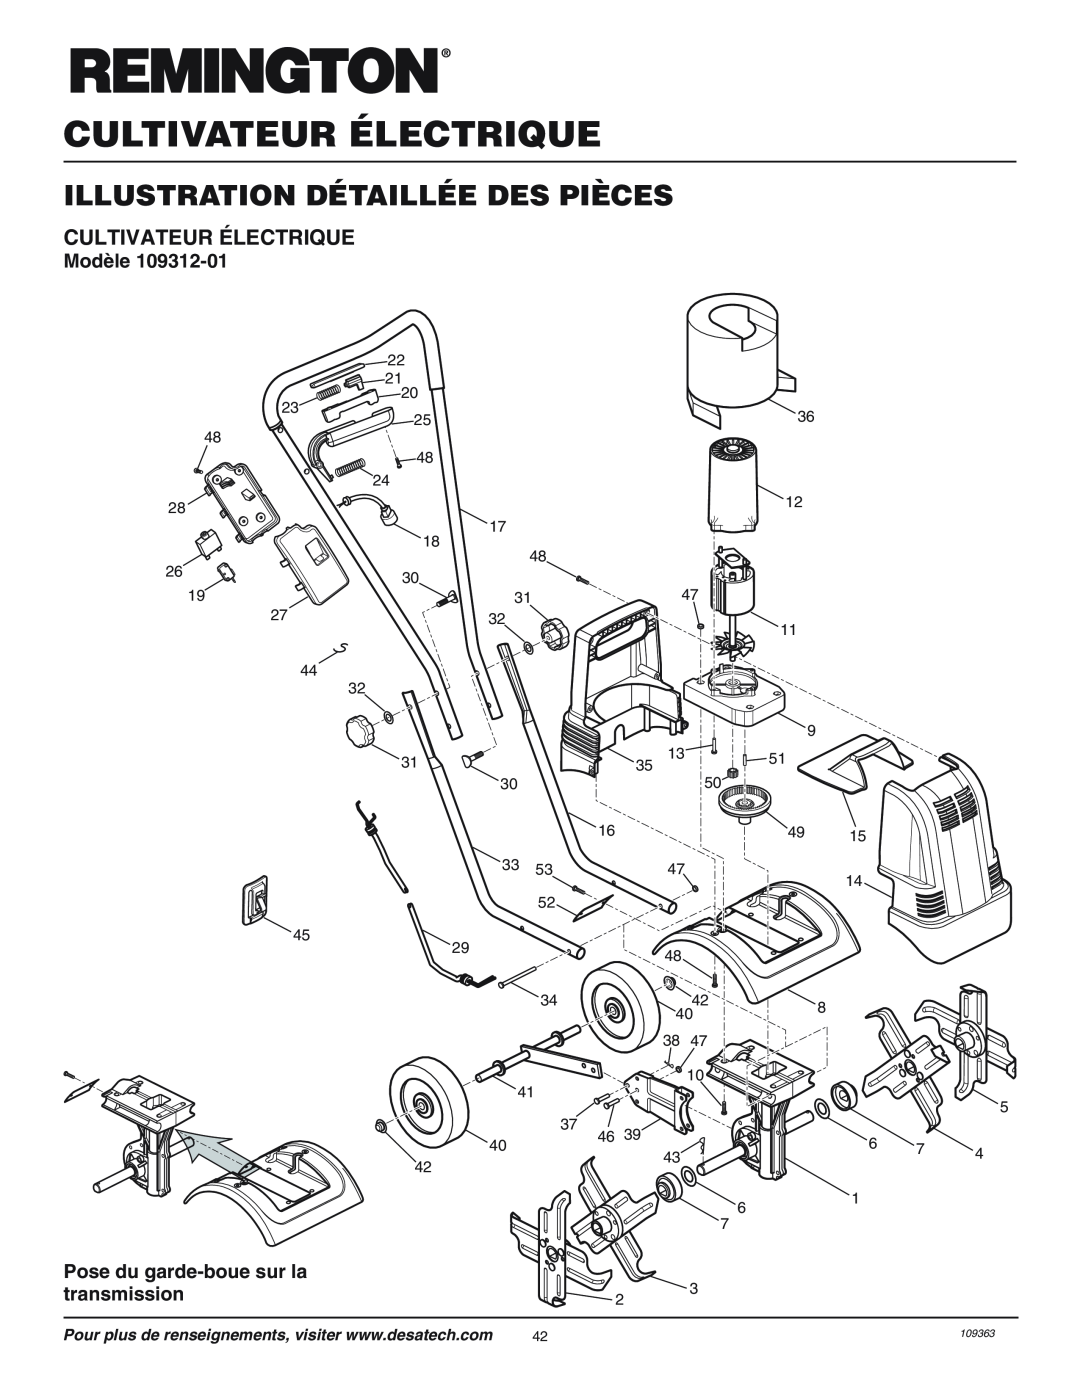 Remington 109312-01 owner manual Illustration Détaillée Des Pièces, Cultivateur Électrique, Modèle 